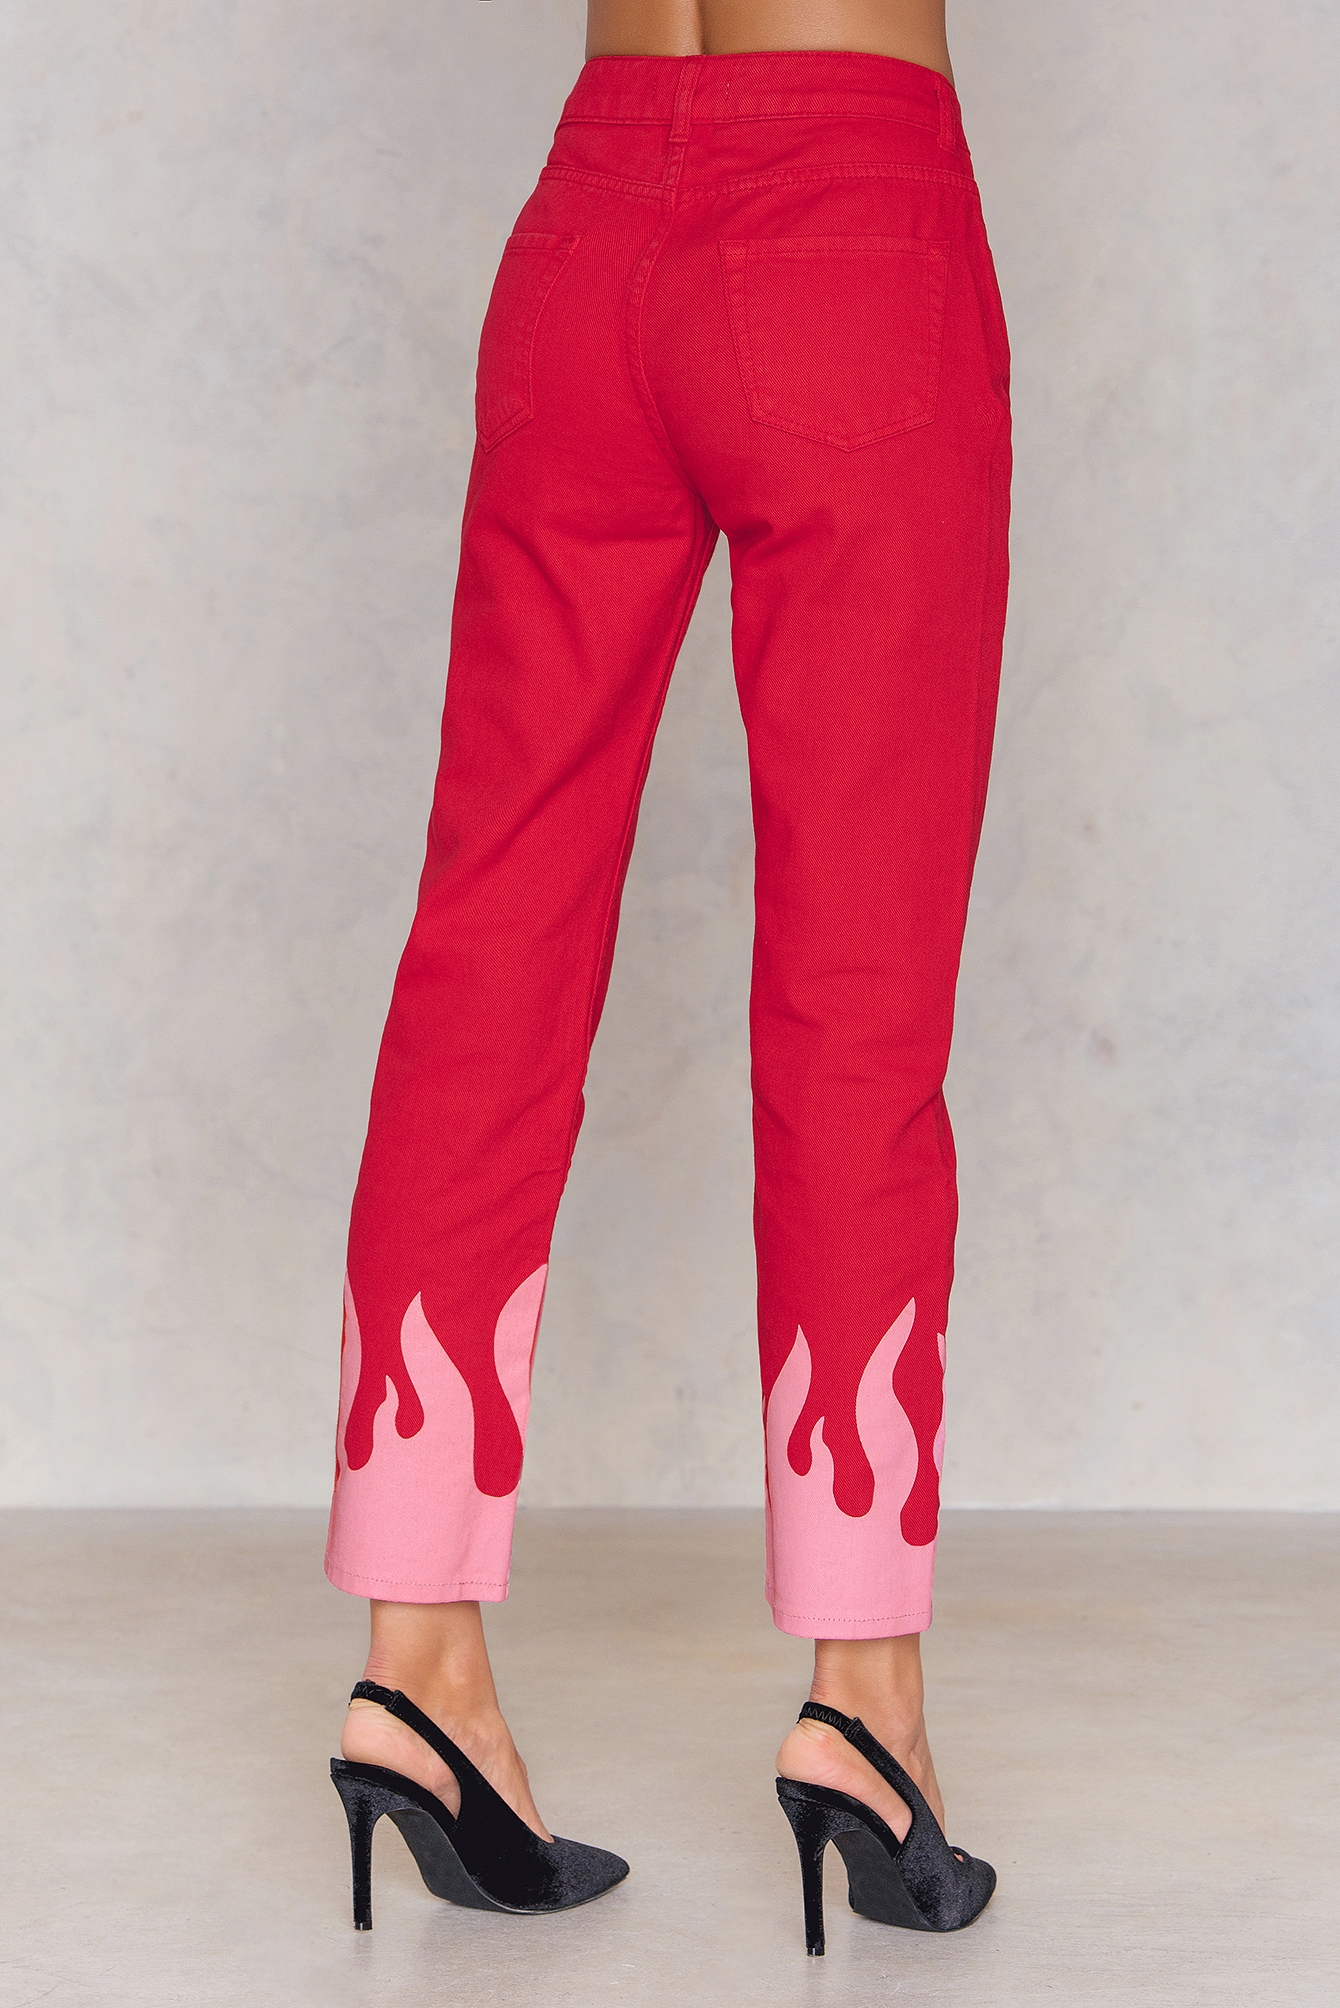 Runner Red Flame Tuxedo Stripe Ski Pants | lupon.gov.ph